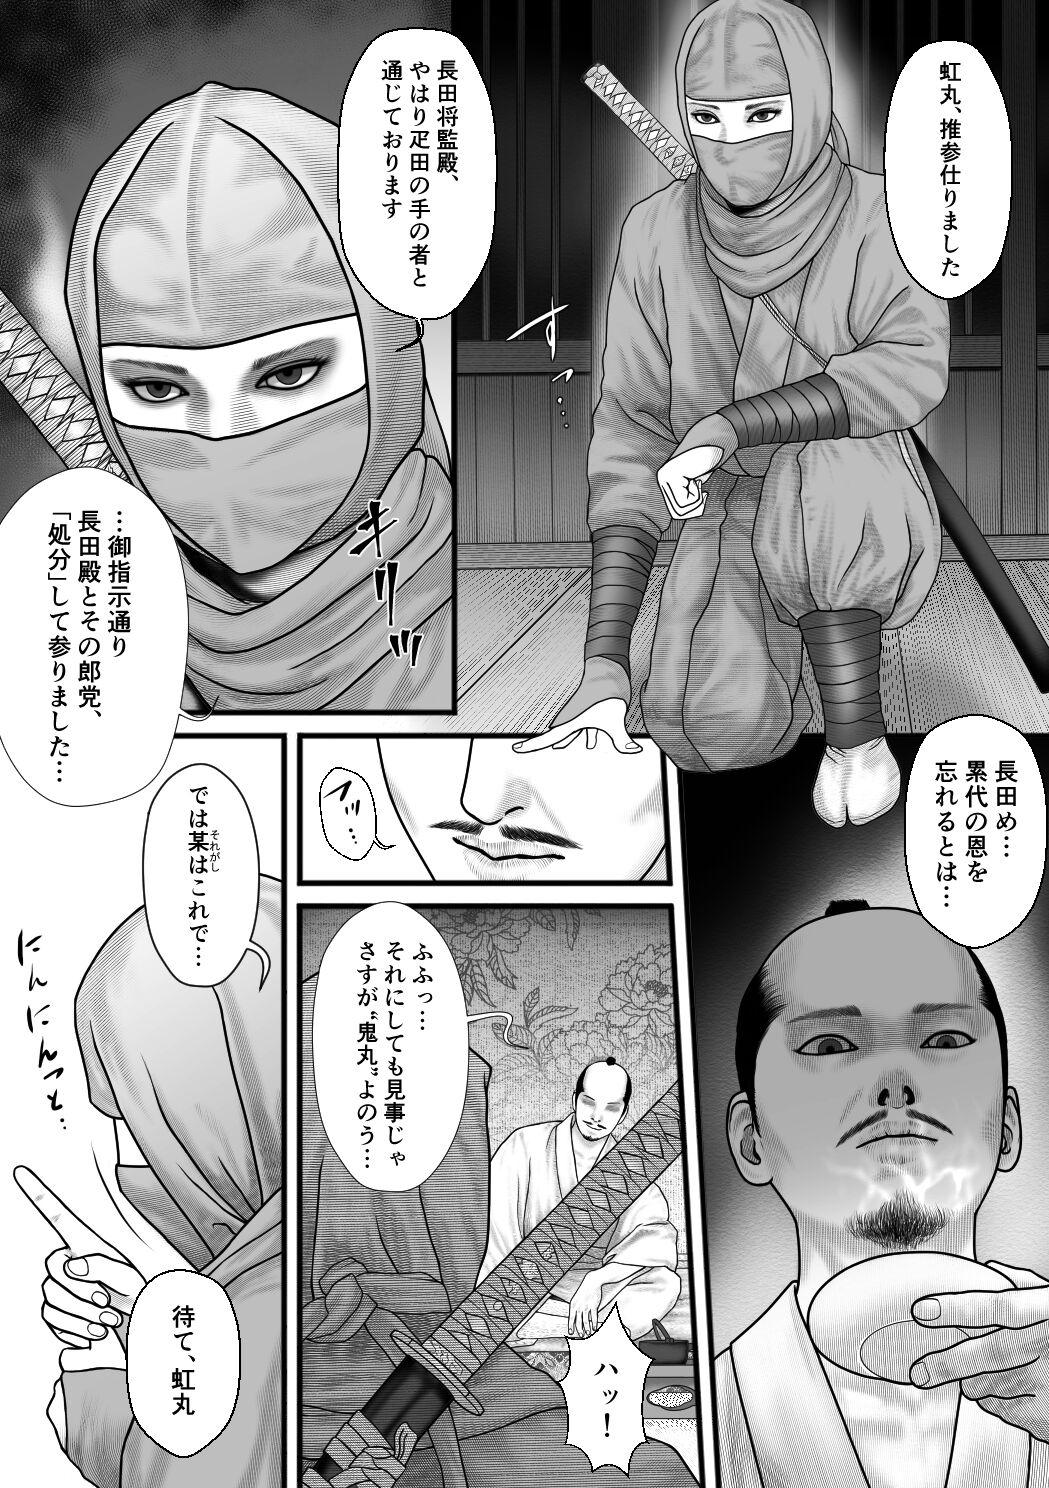 Chaturbate Shinobi no otsutome - Original Ethnic - Page 3